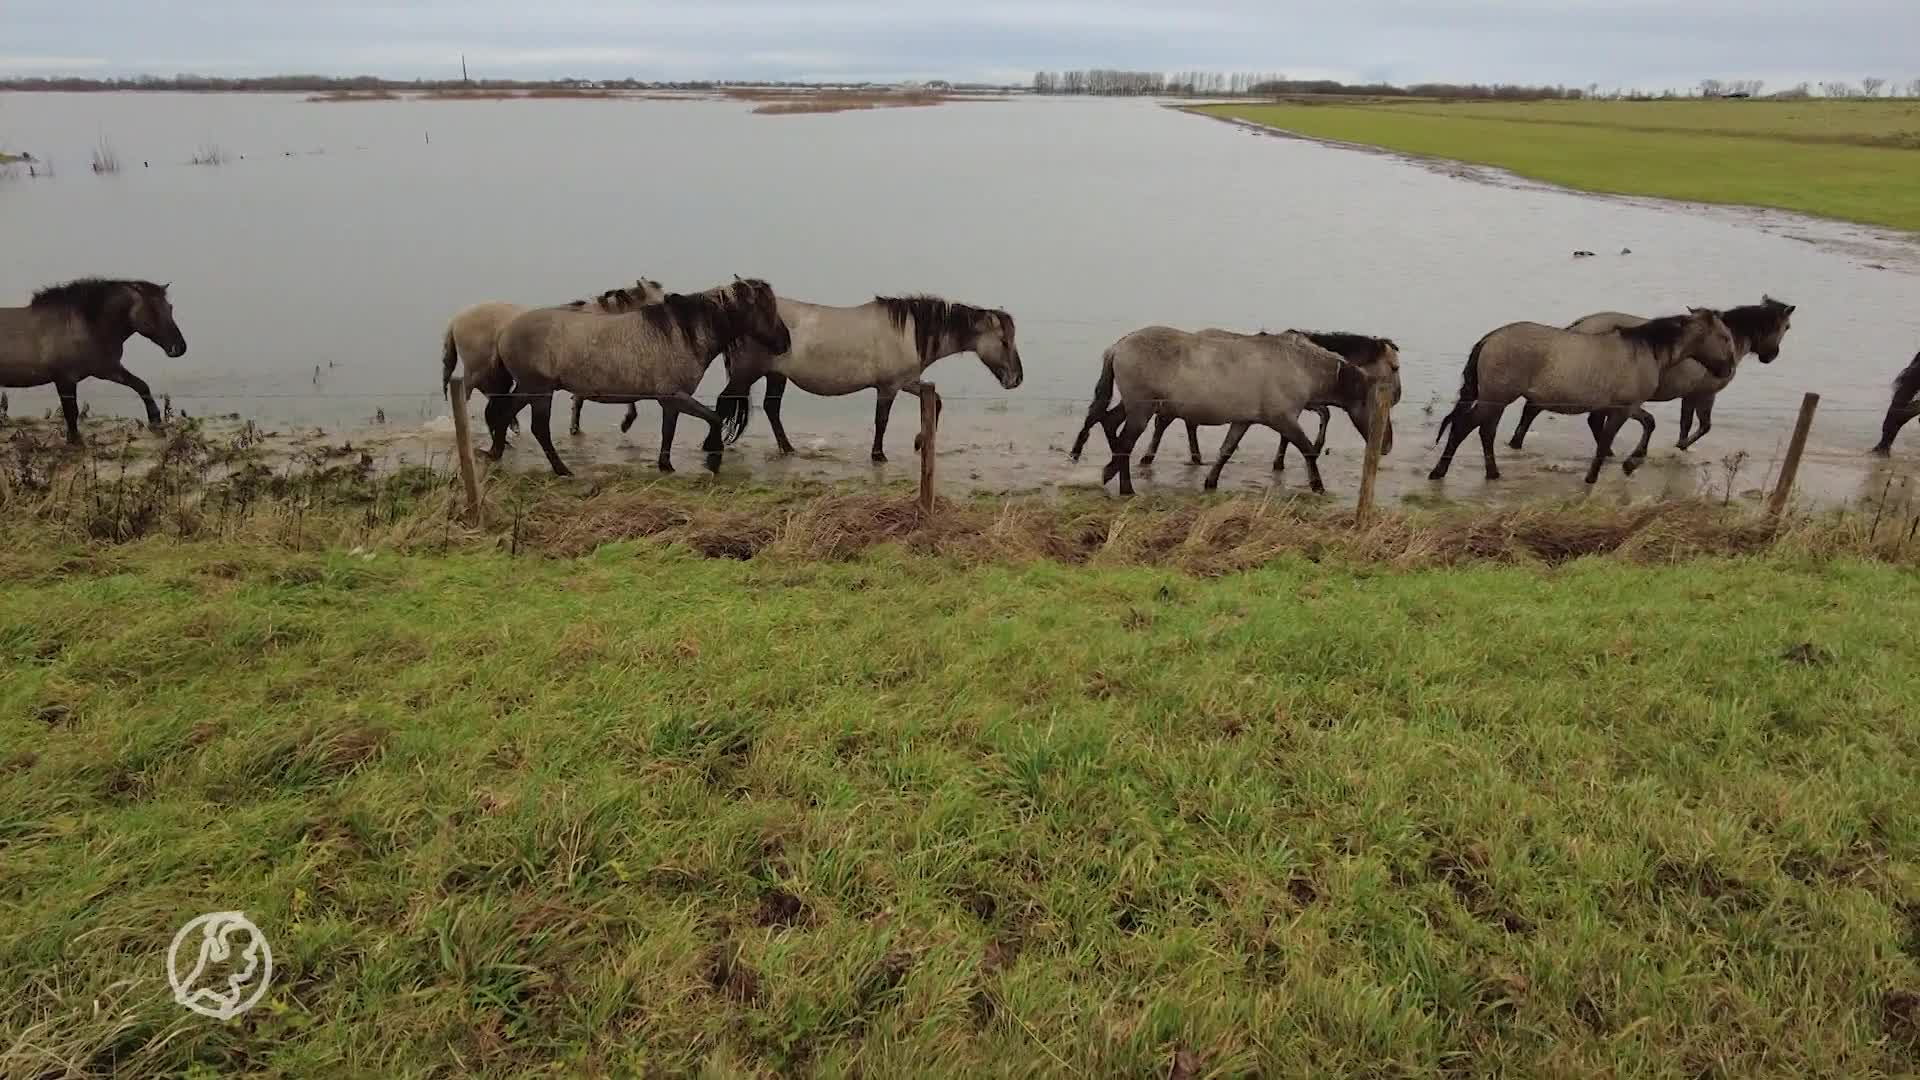 Grote reddingsactie op poten gezet om paarden en runderen van hoogwater te redden